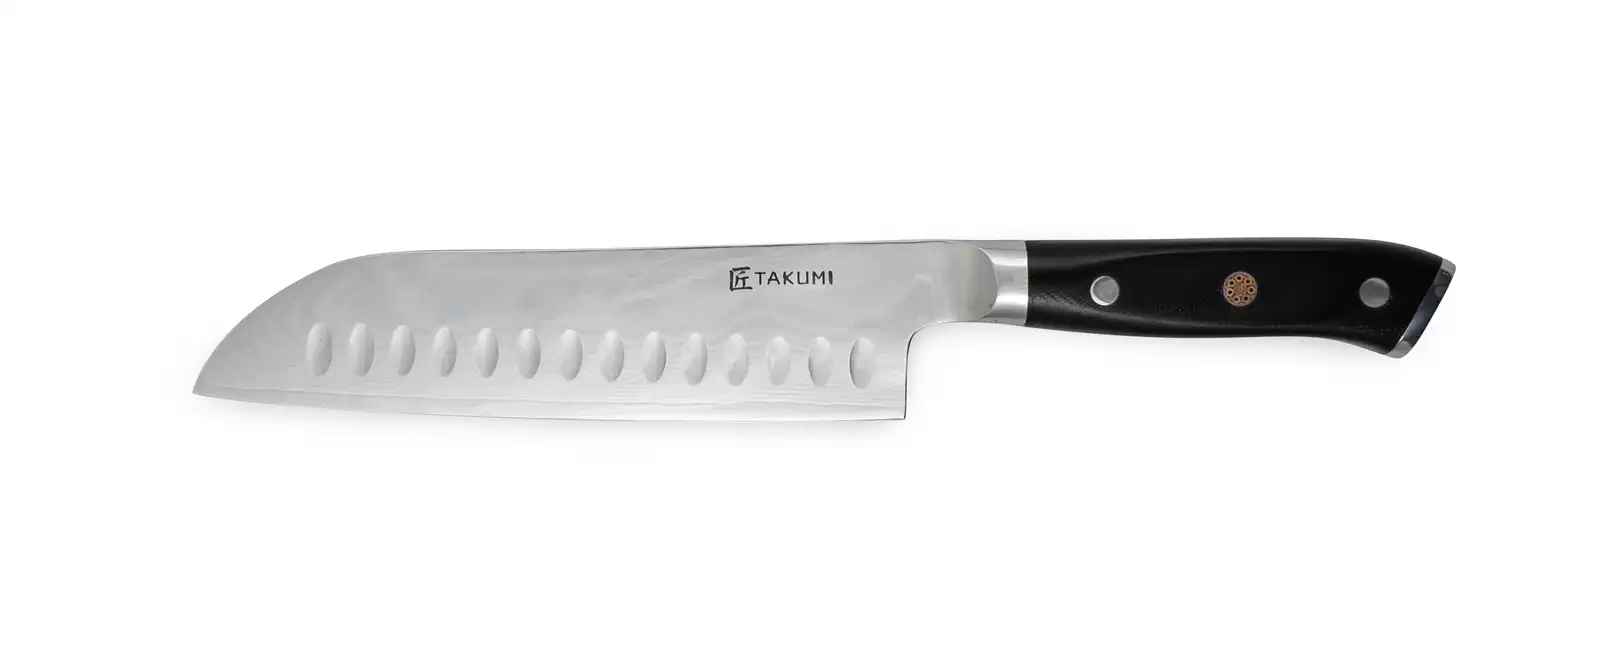 Takumi 18cm Santoku Knife in Gift Box